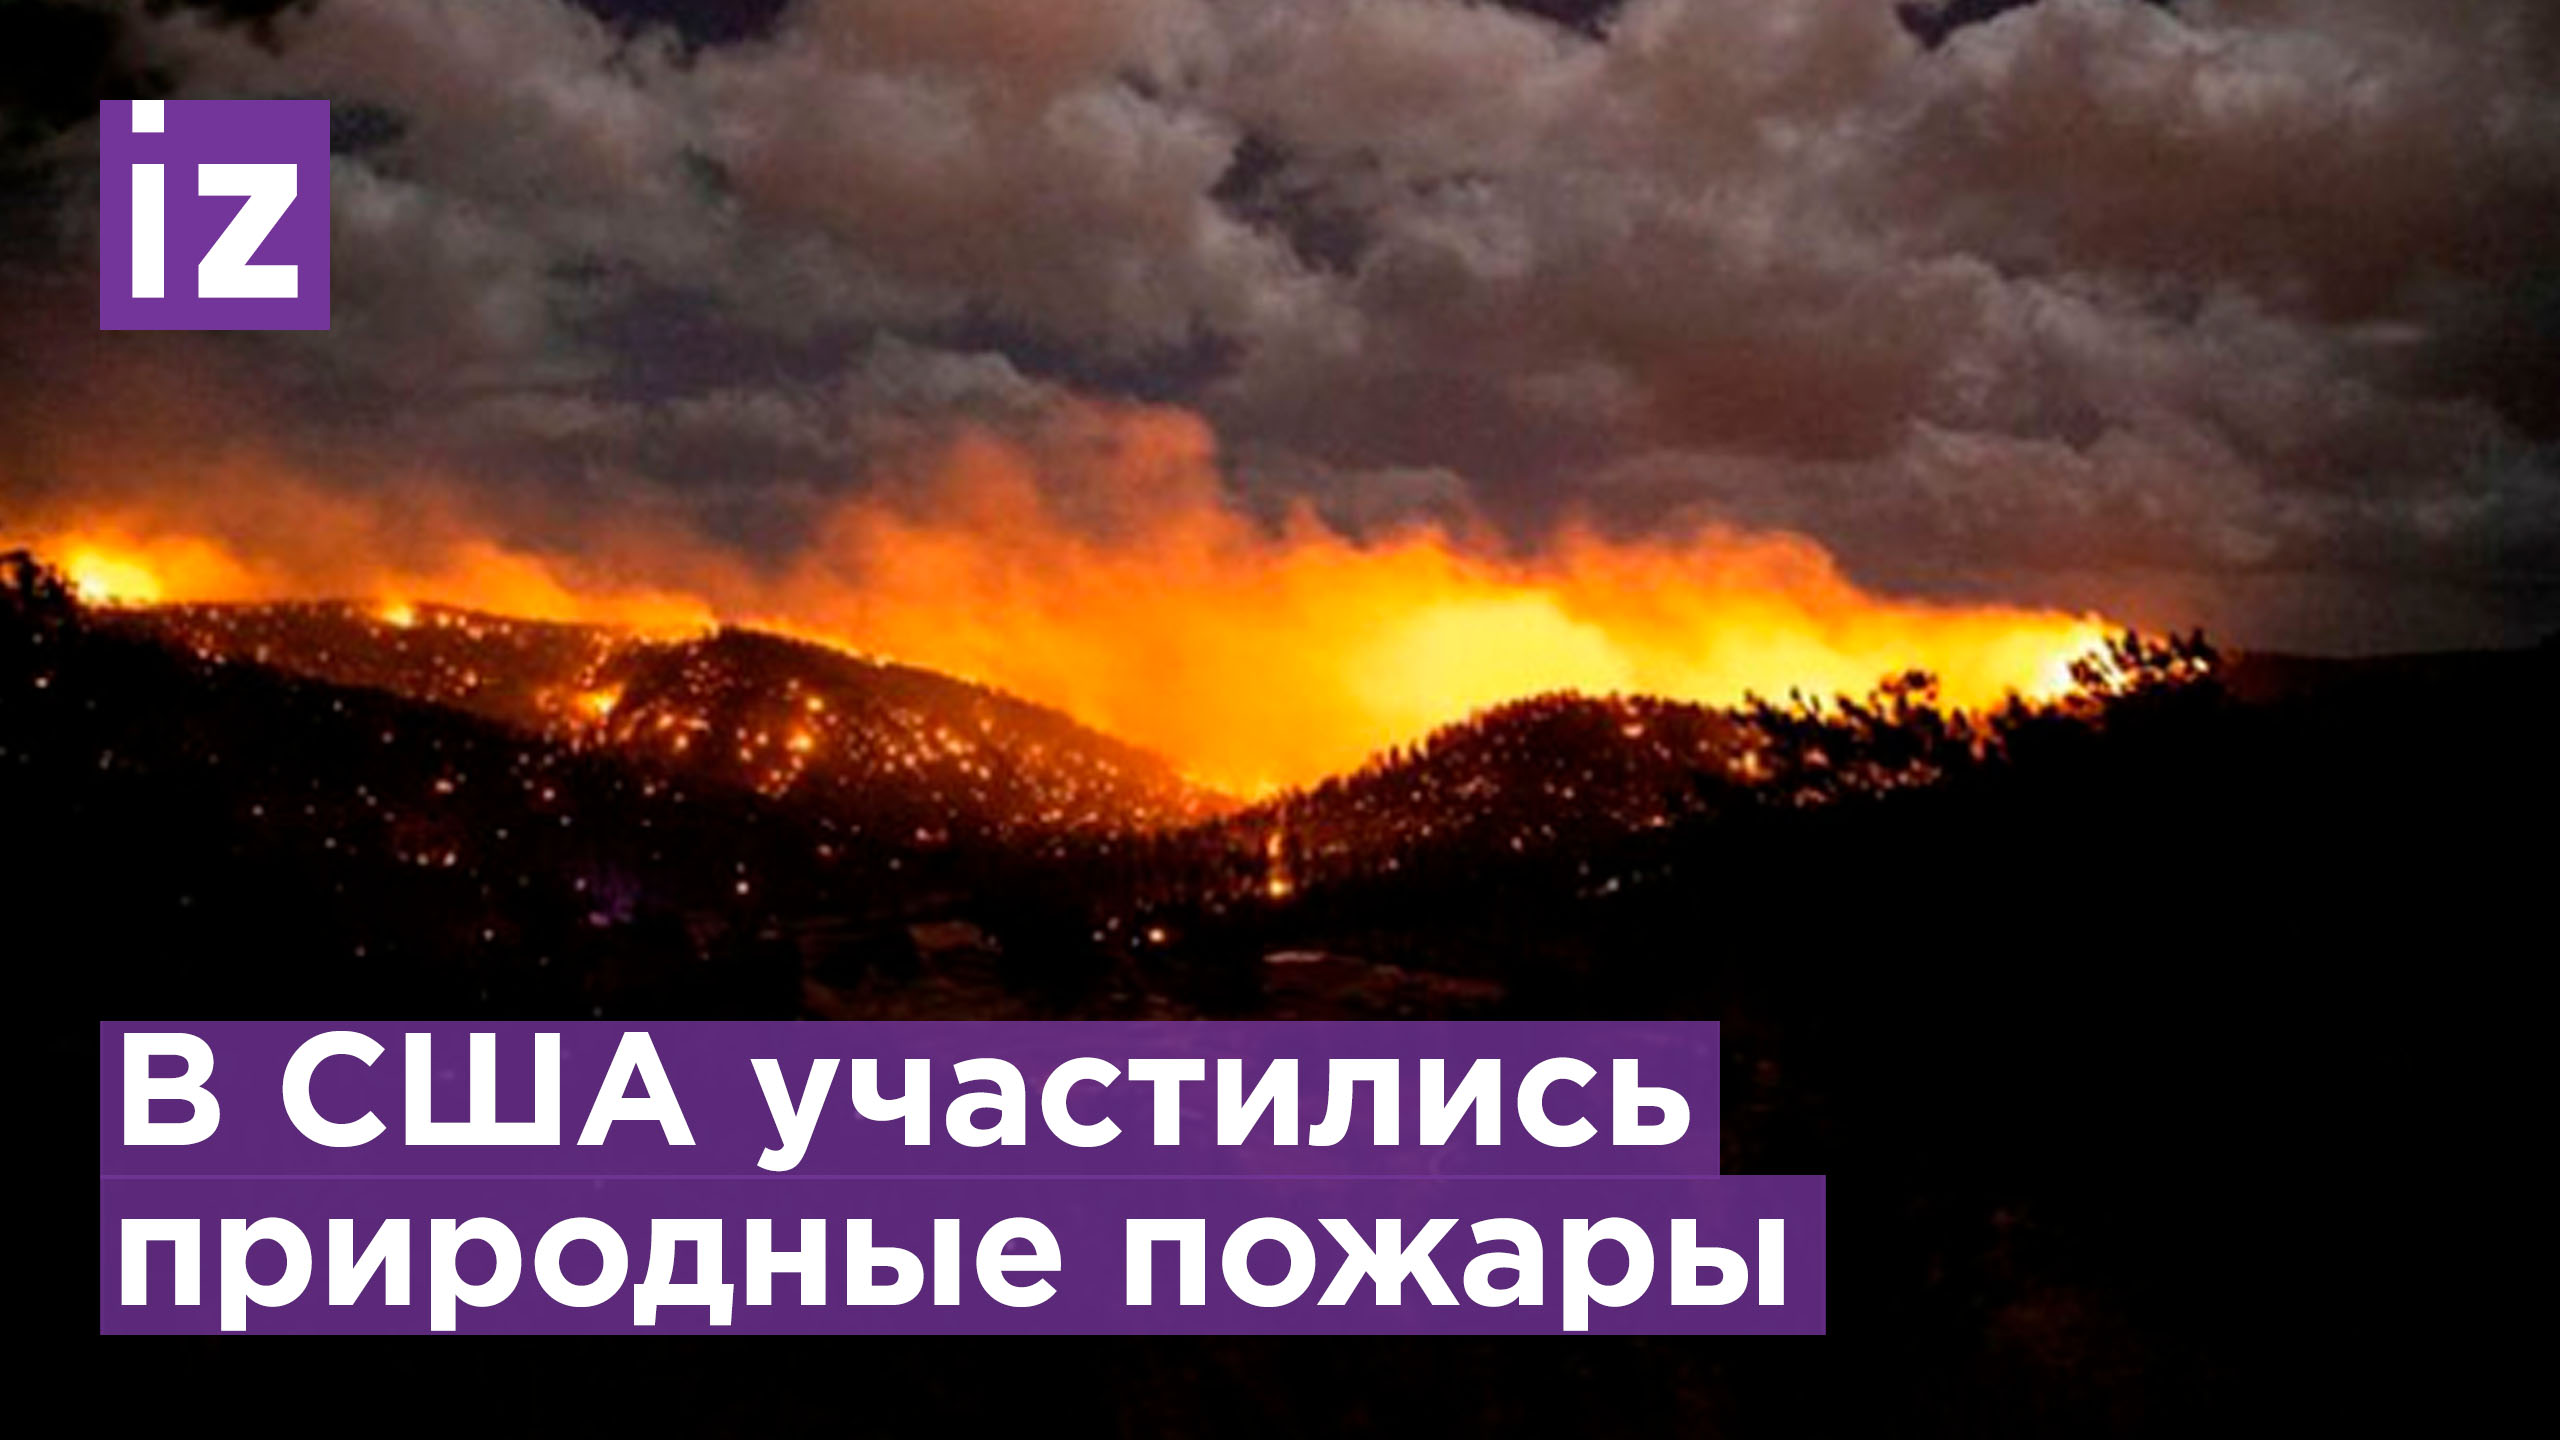 Видео: в США бушуют природные пожары / Известия